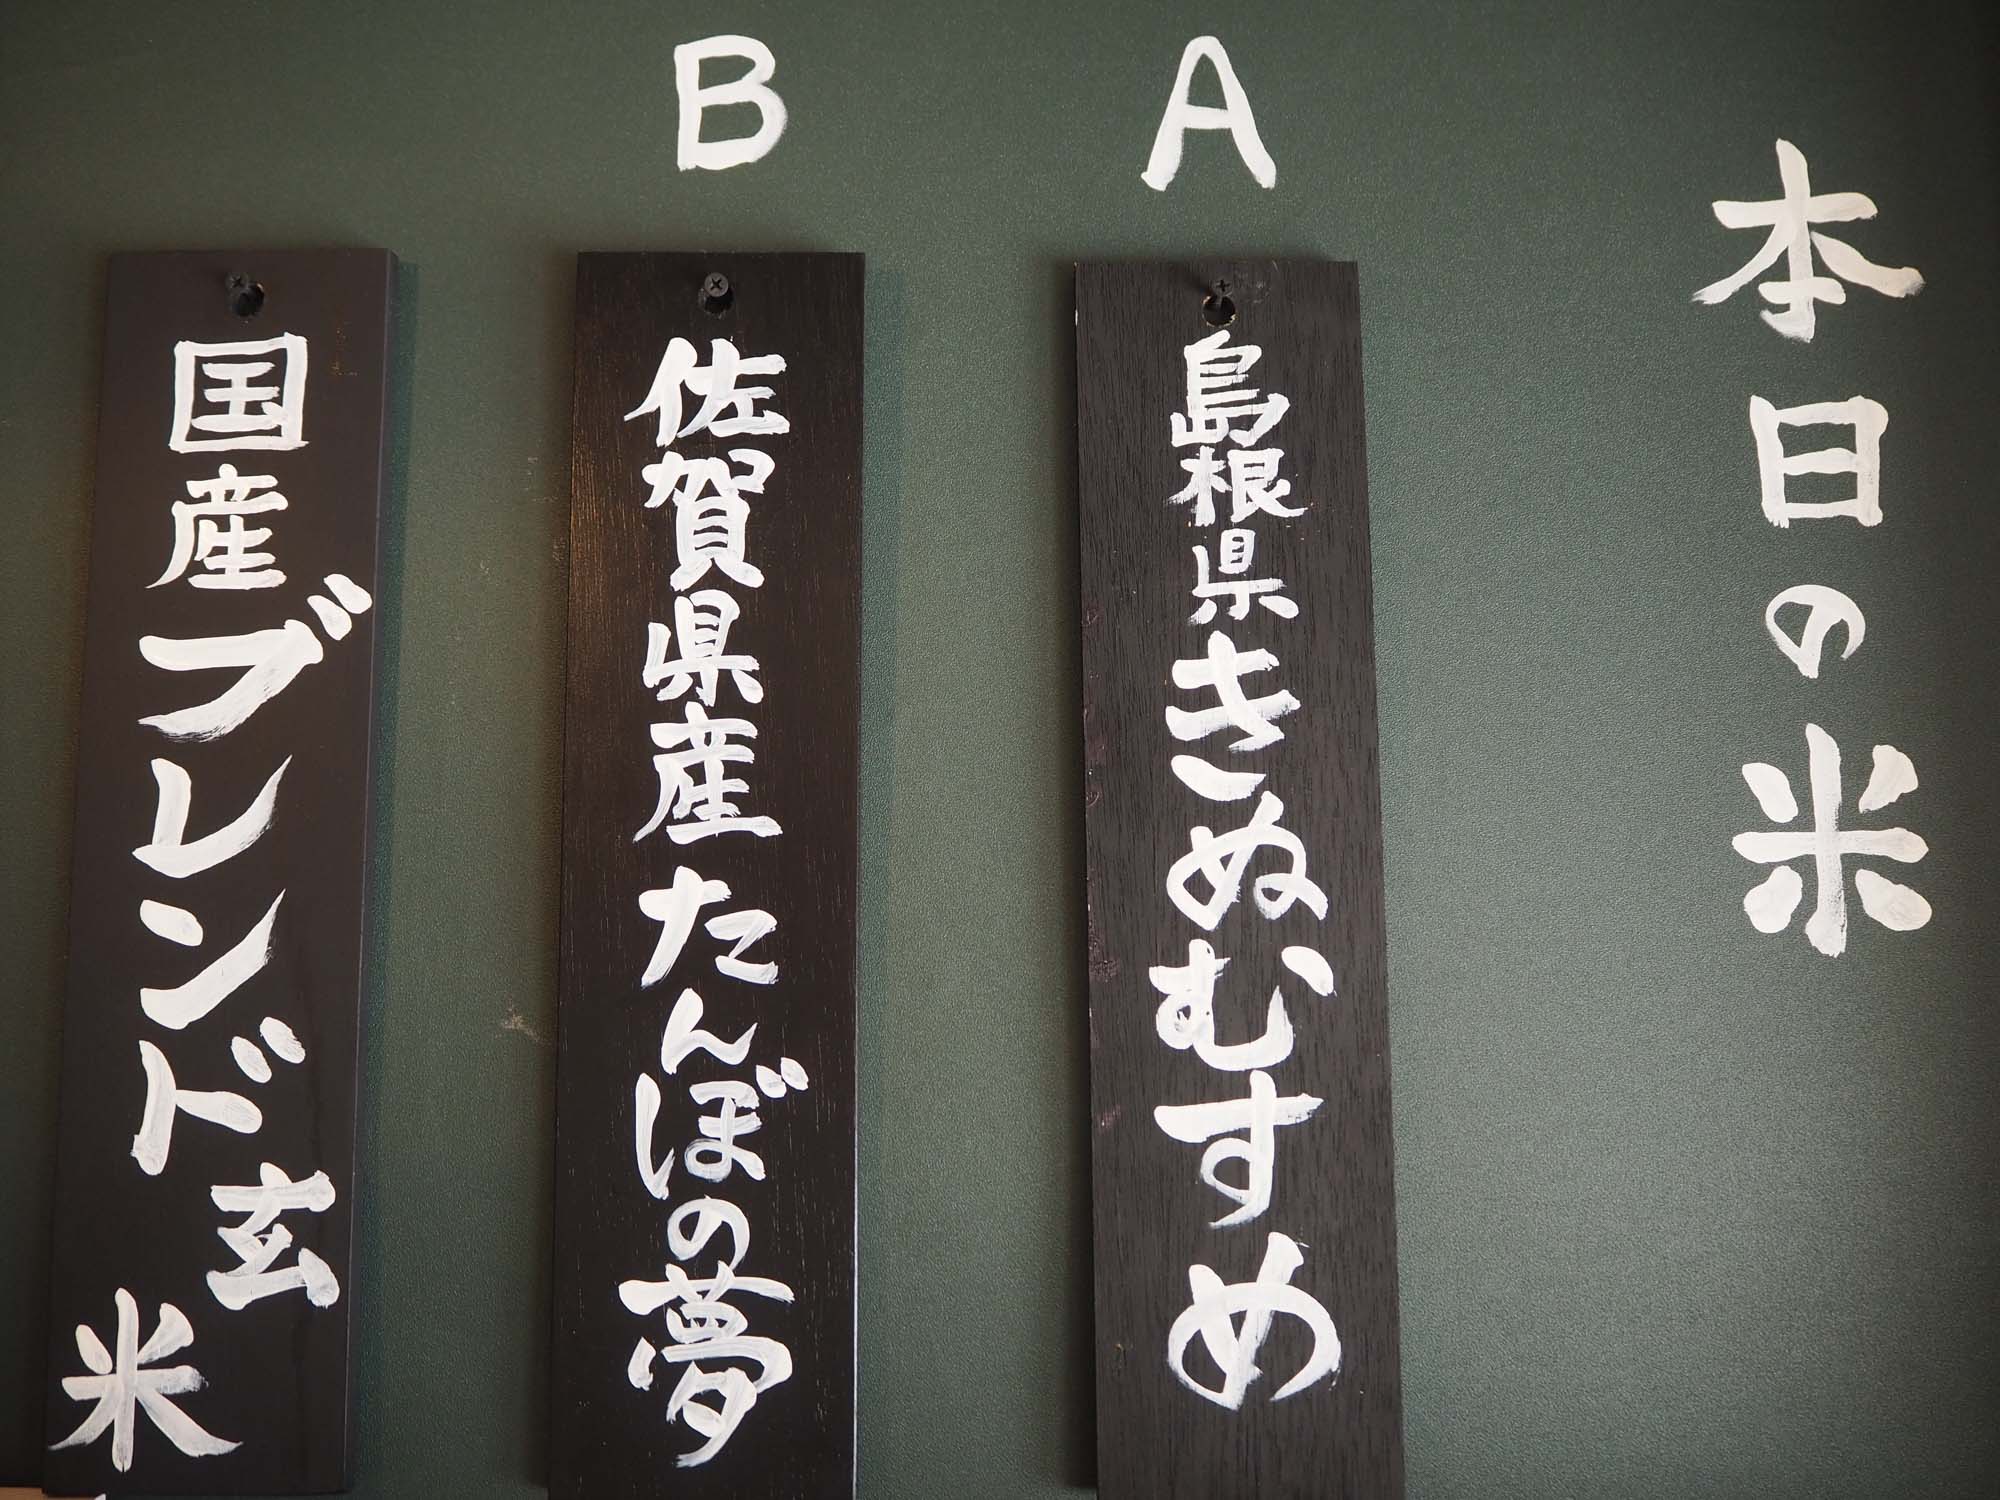 お米は黒板をチェックしましょう。３種類から選べます。今回は「B佐賀県産たんぼの夢」をチョイス。